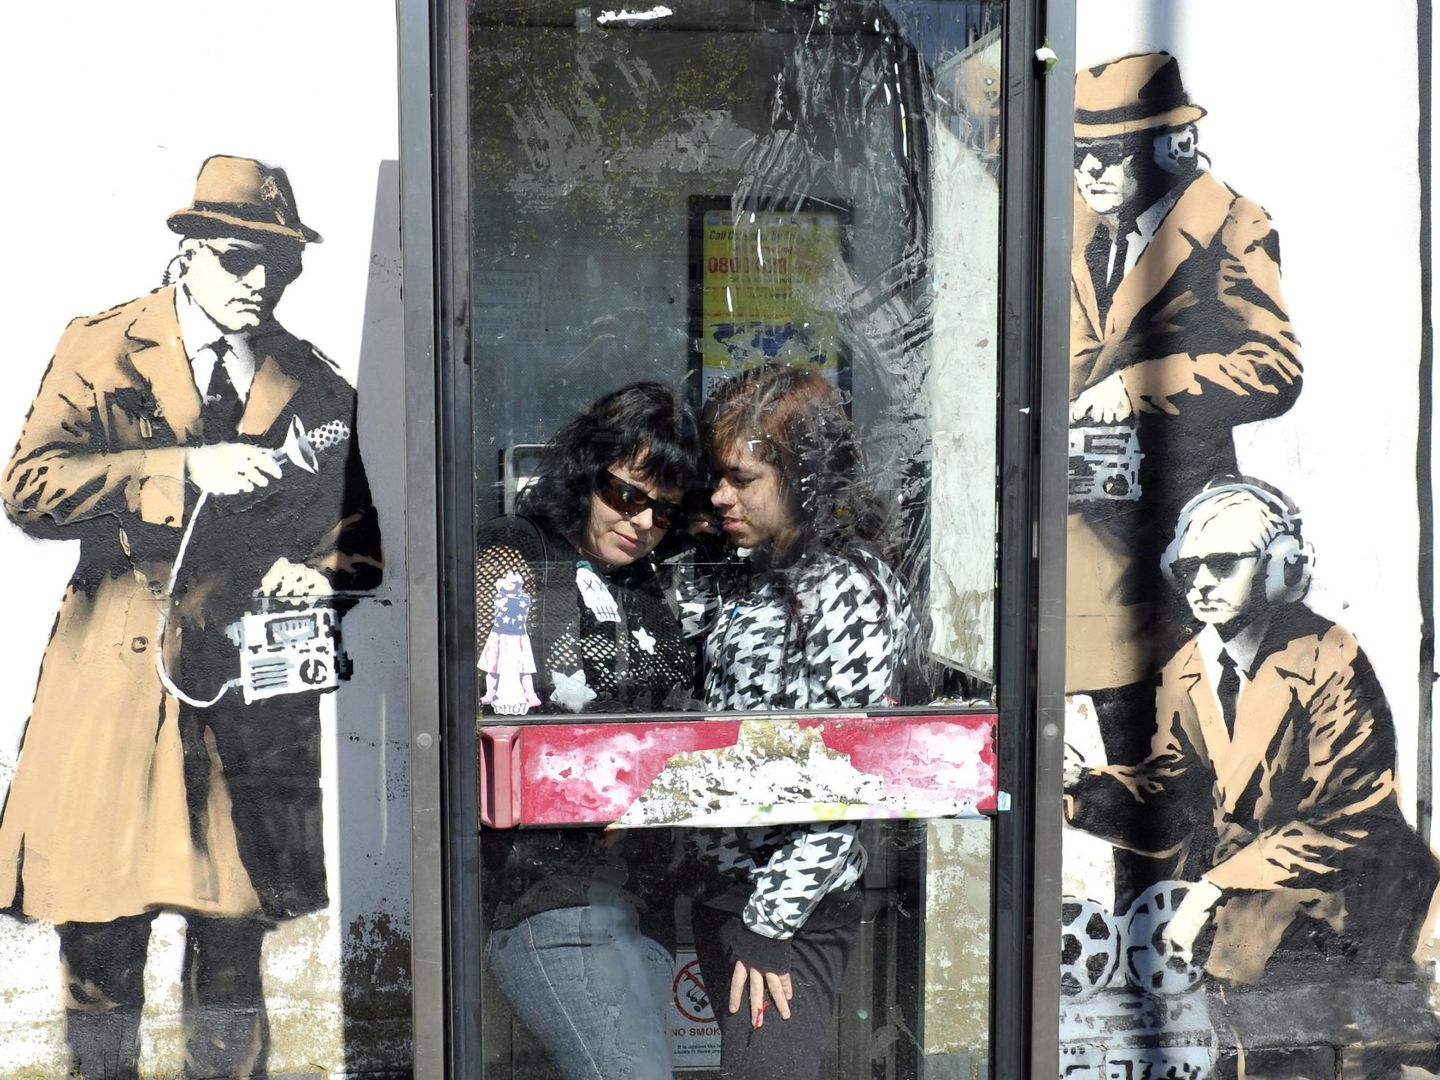 Atribuyen a banksy un mural callejero que representa el mundo del espionaje